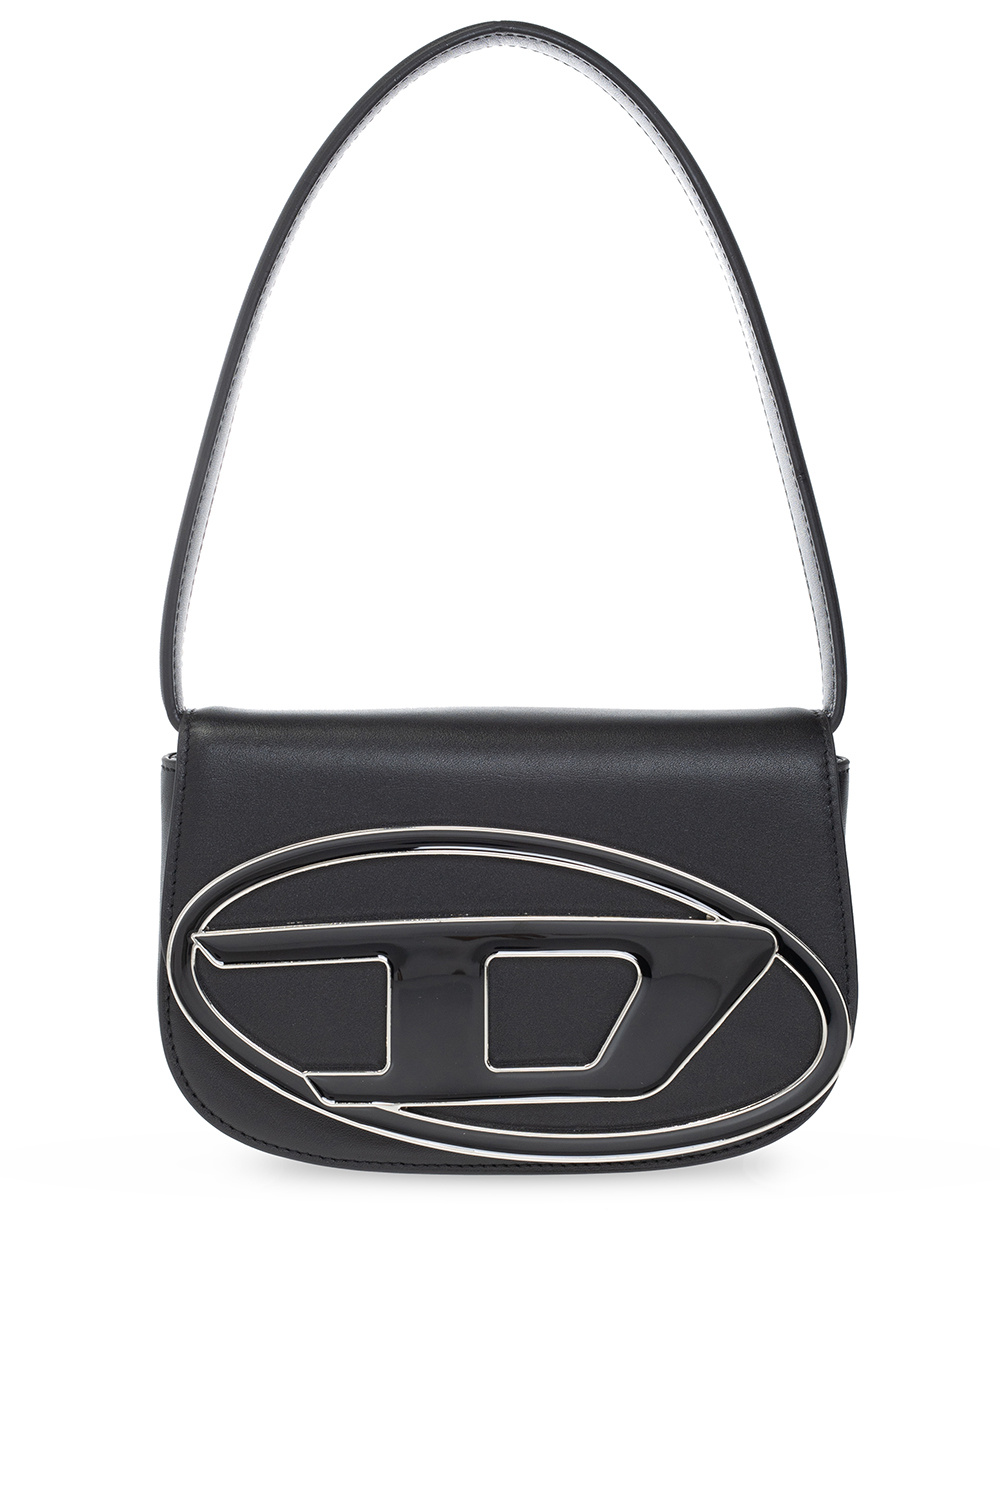 Black '1DR' shoulder bag Diesel - Vitkac Canada